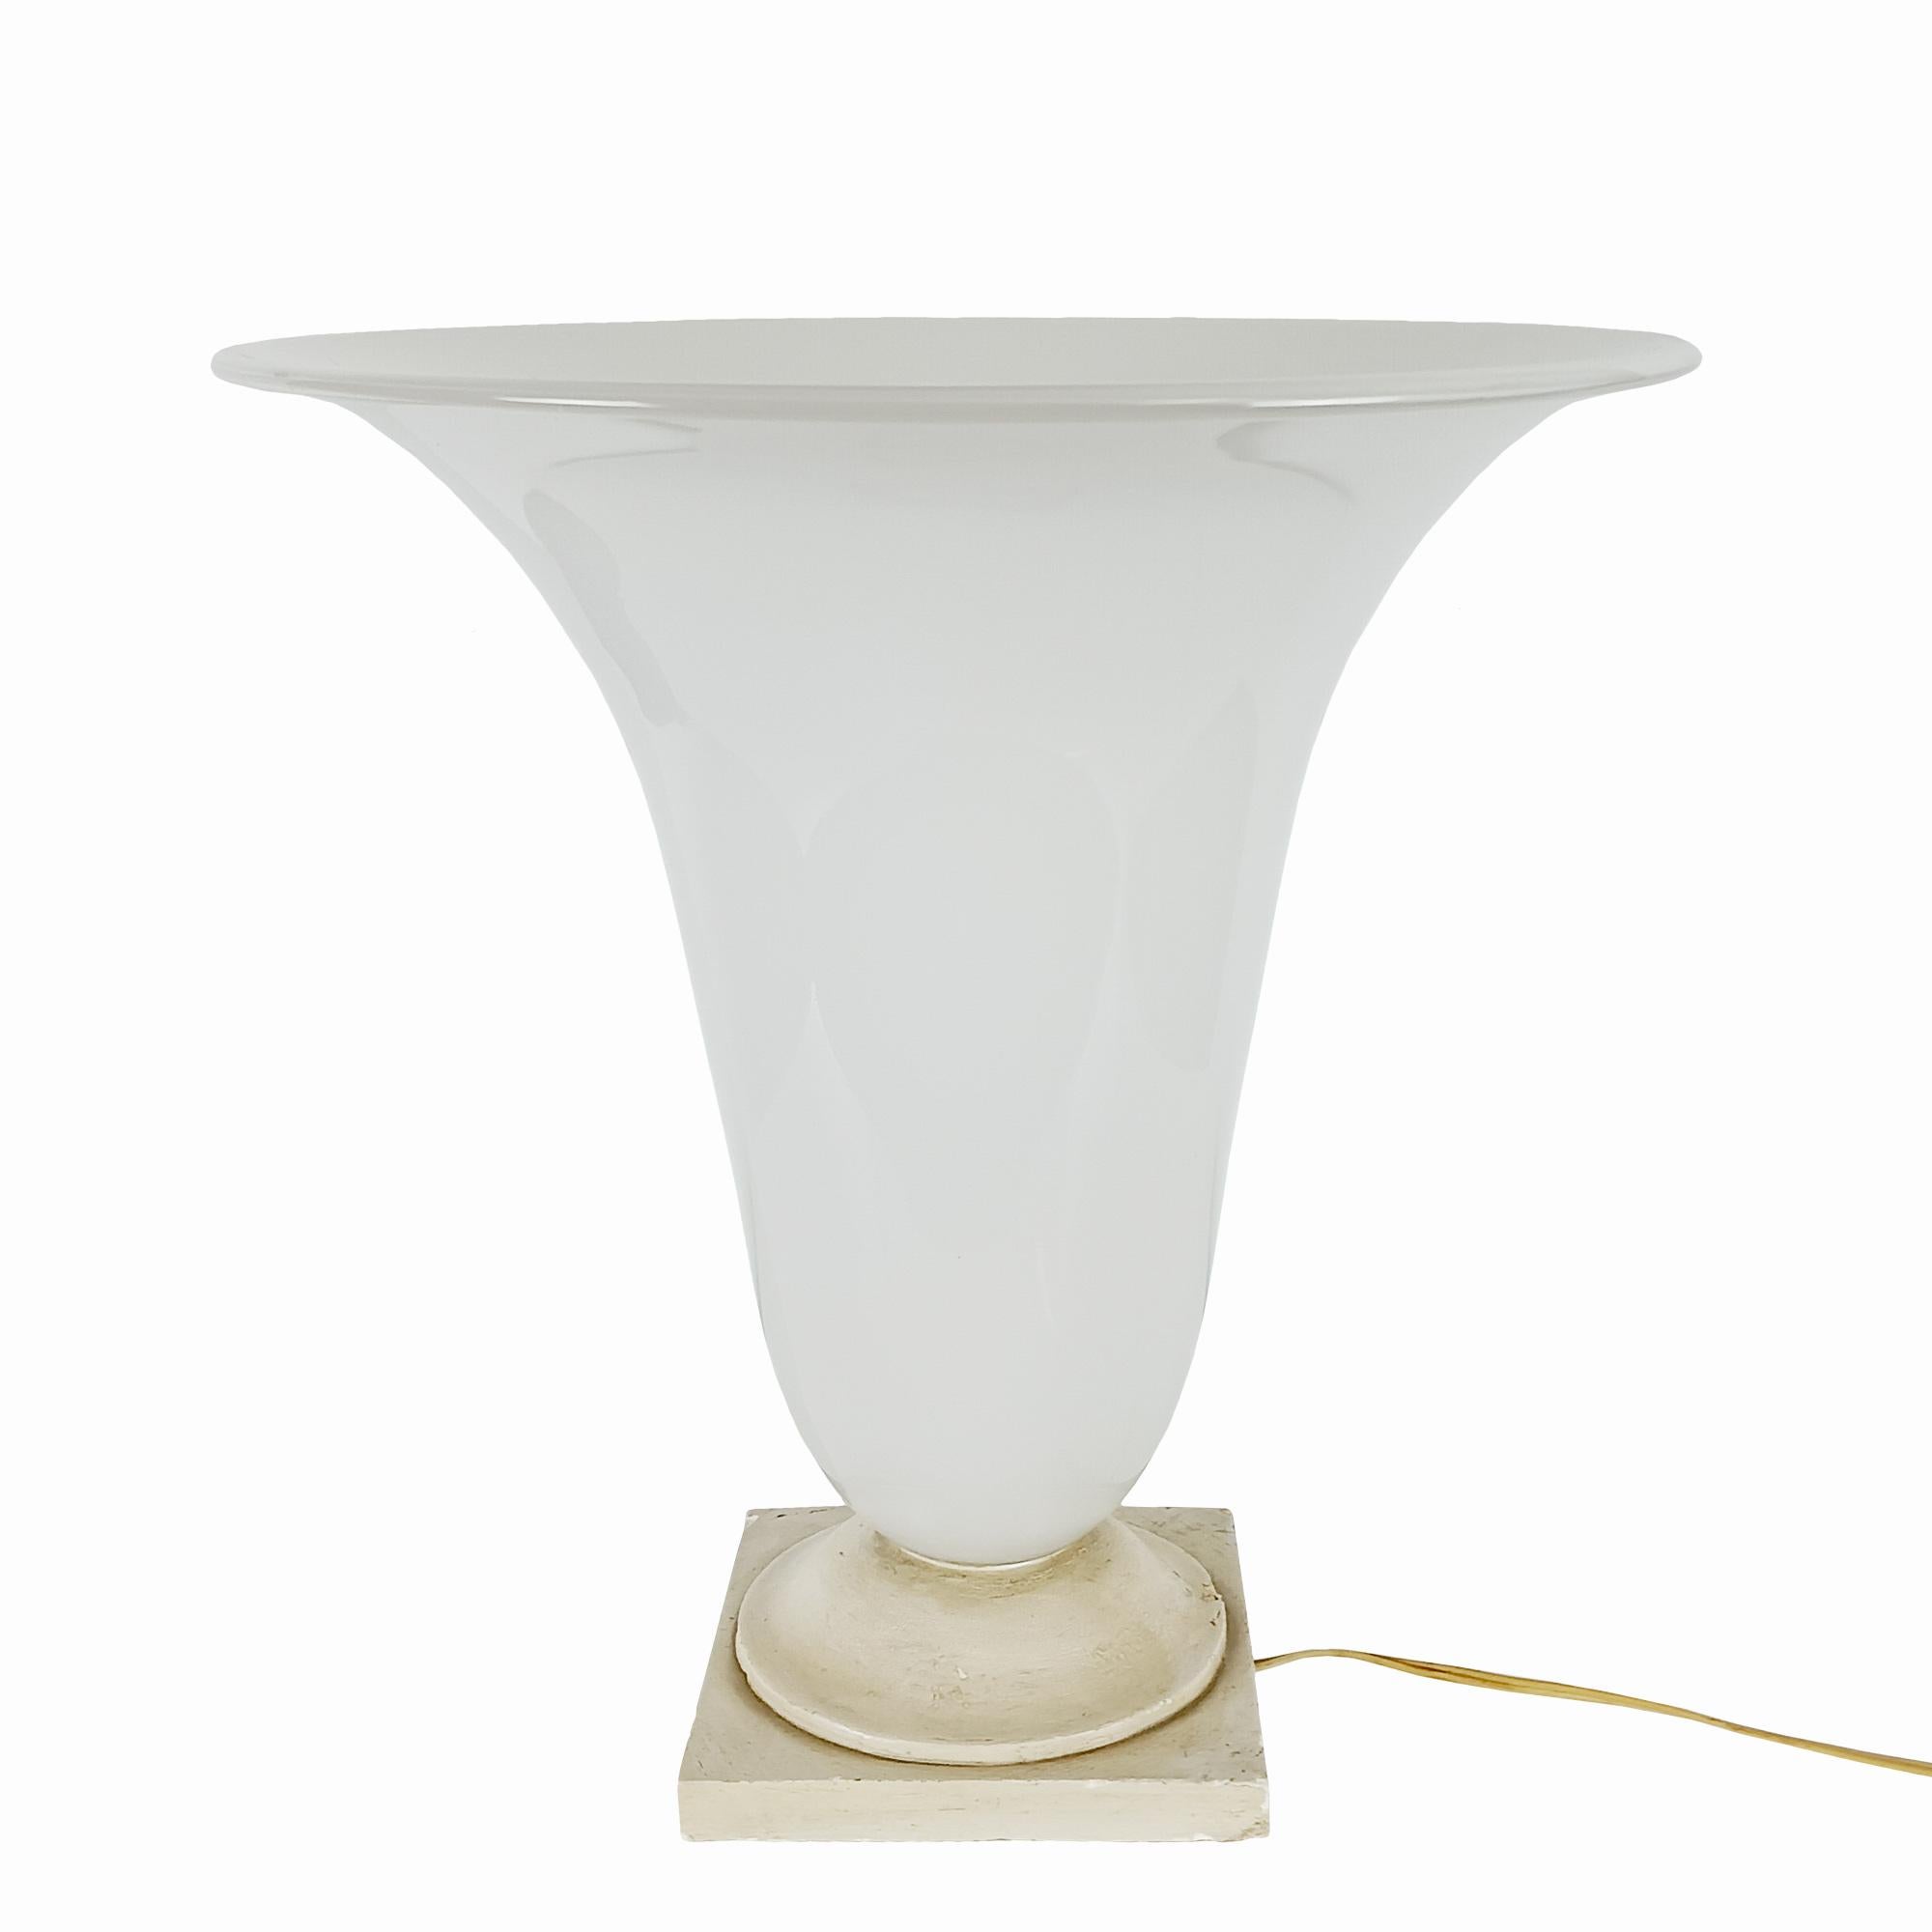 Tischlampe aus weißem Opalglas auf einem bemalten Gipssockel.

Frankreich um 1930.

 